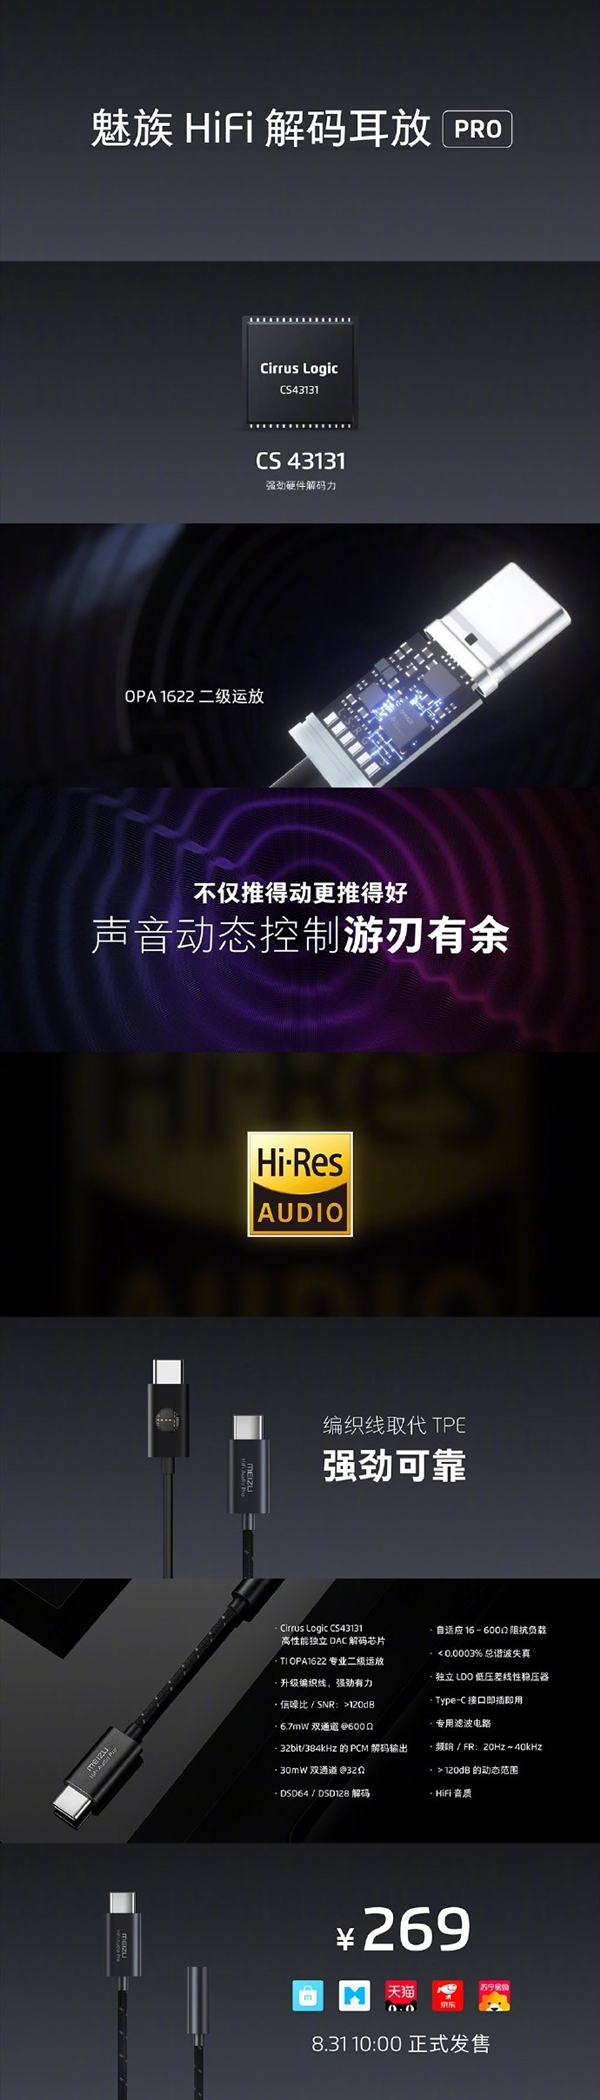 魅族HiFi解码耳放PRO发布：还原超CD级音质